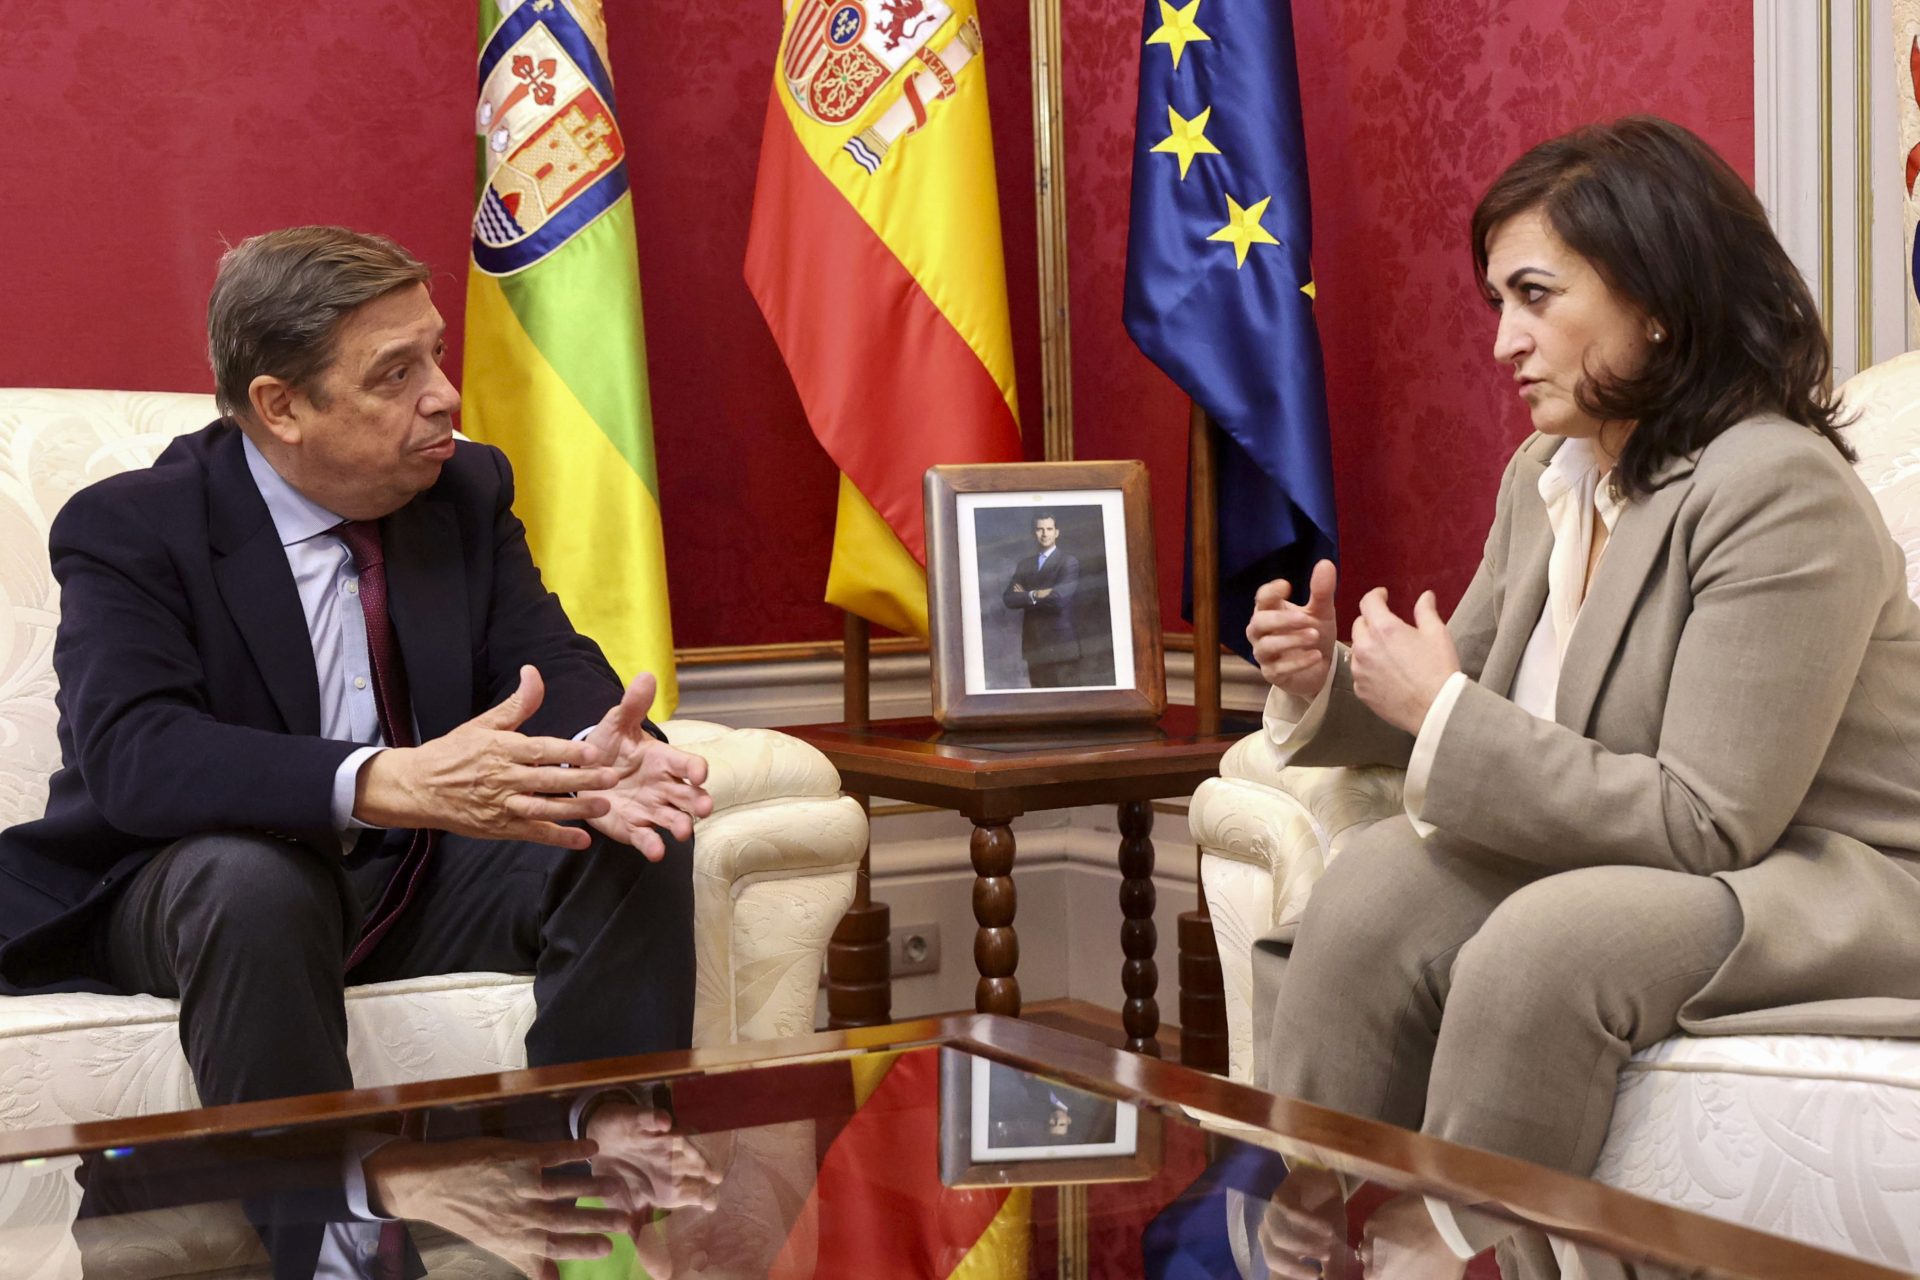 La presidenta del Gobierno de La Rioja, Concha Andreu, recibe al ministro de Agricultura, Luis Planas.EFE/Raquel Manzanares